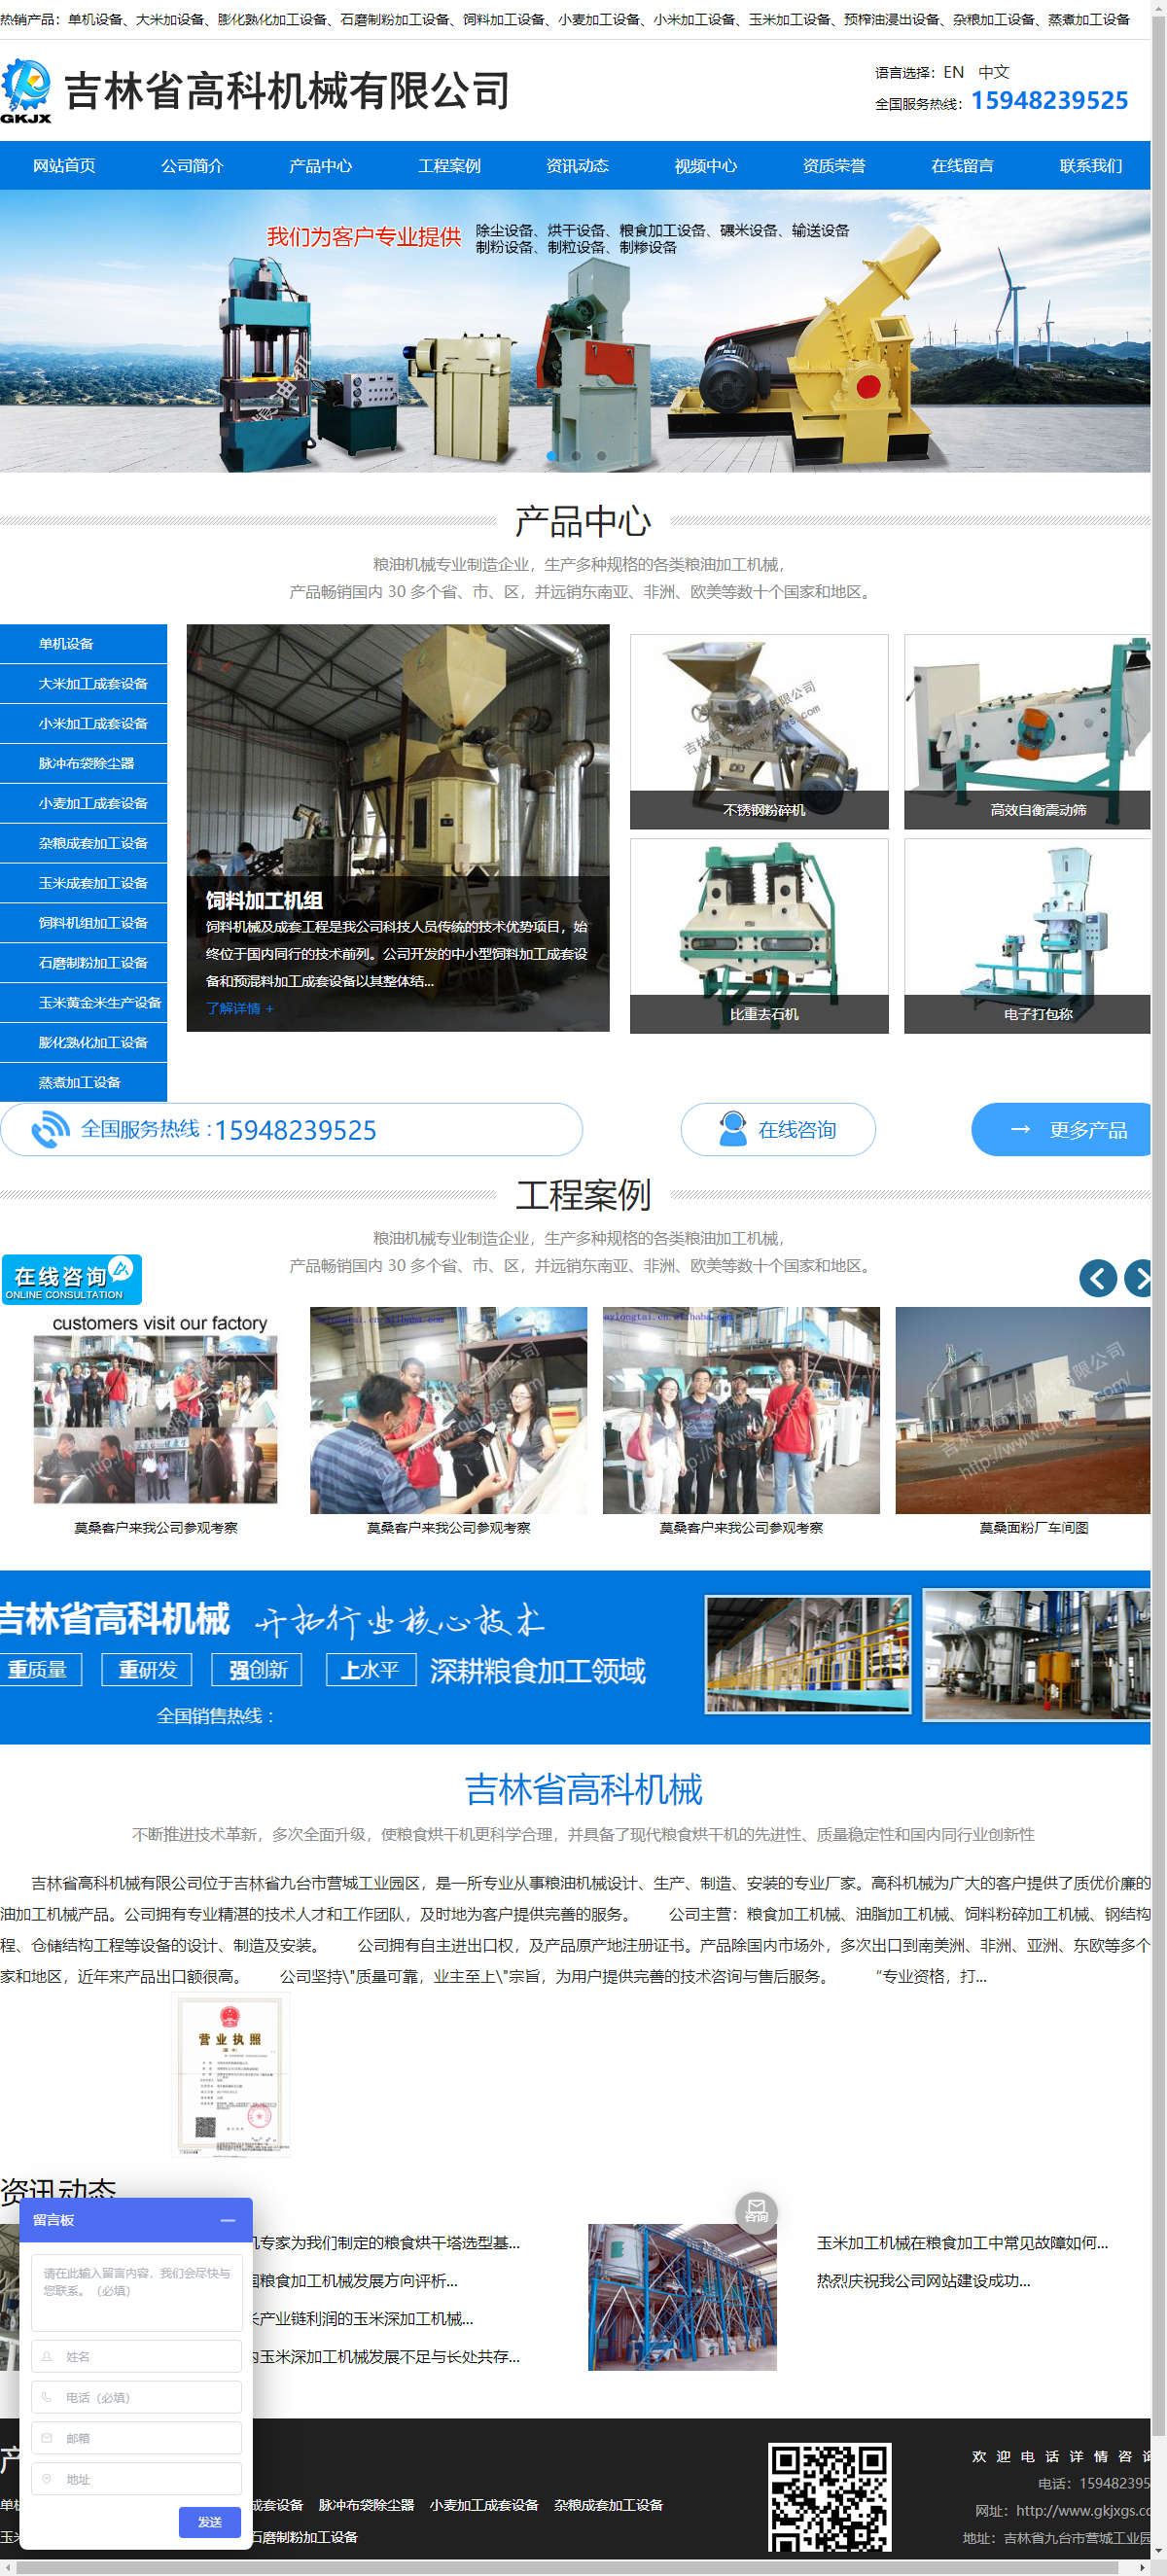 吉林省高科机械有限公司网站案例